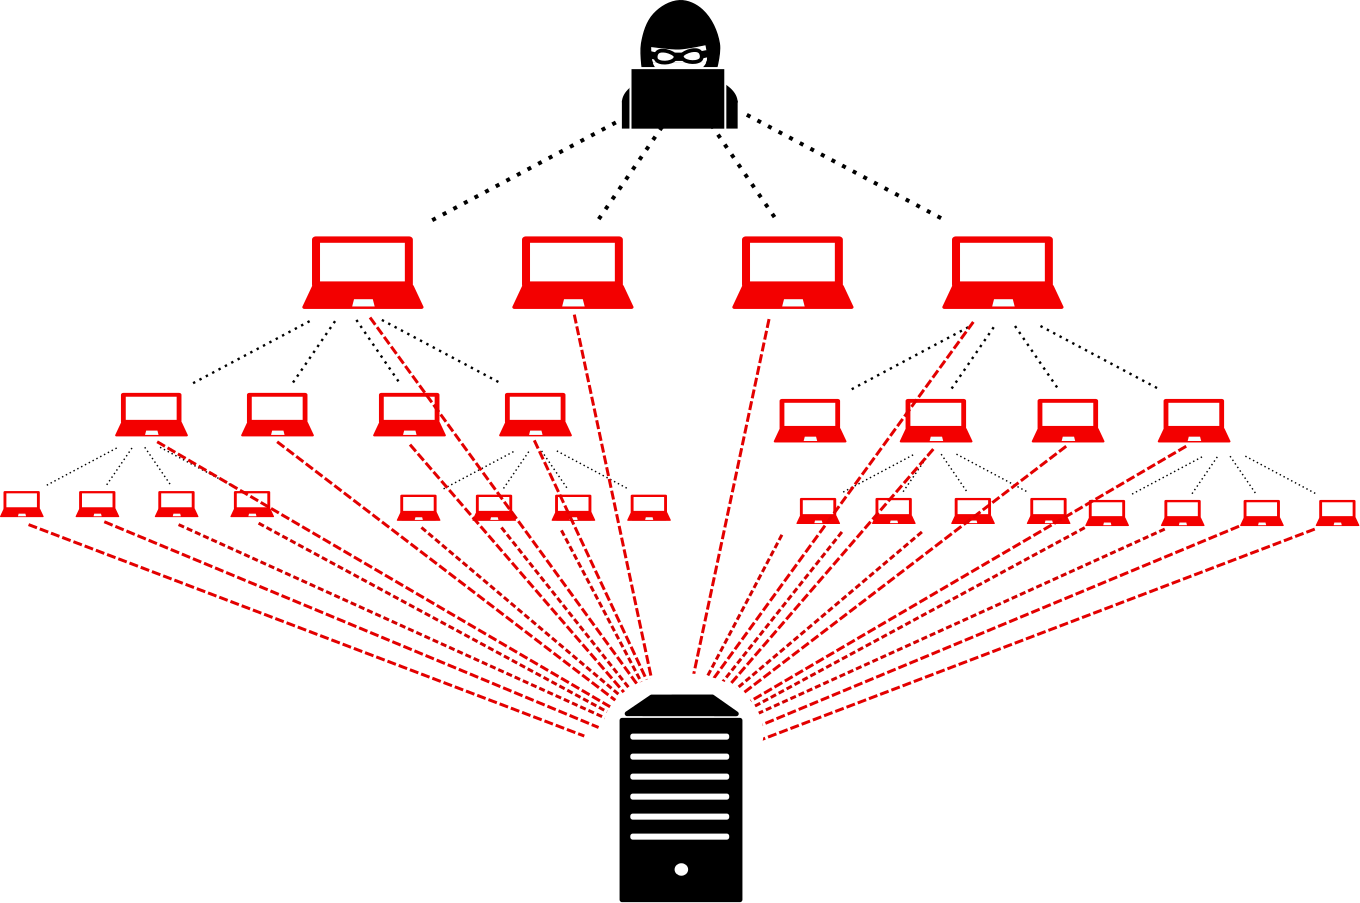 حملات DDoS چگونه توسط هکرها انجام میشود؟